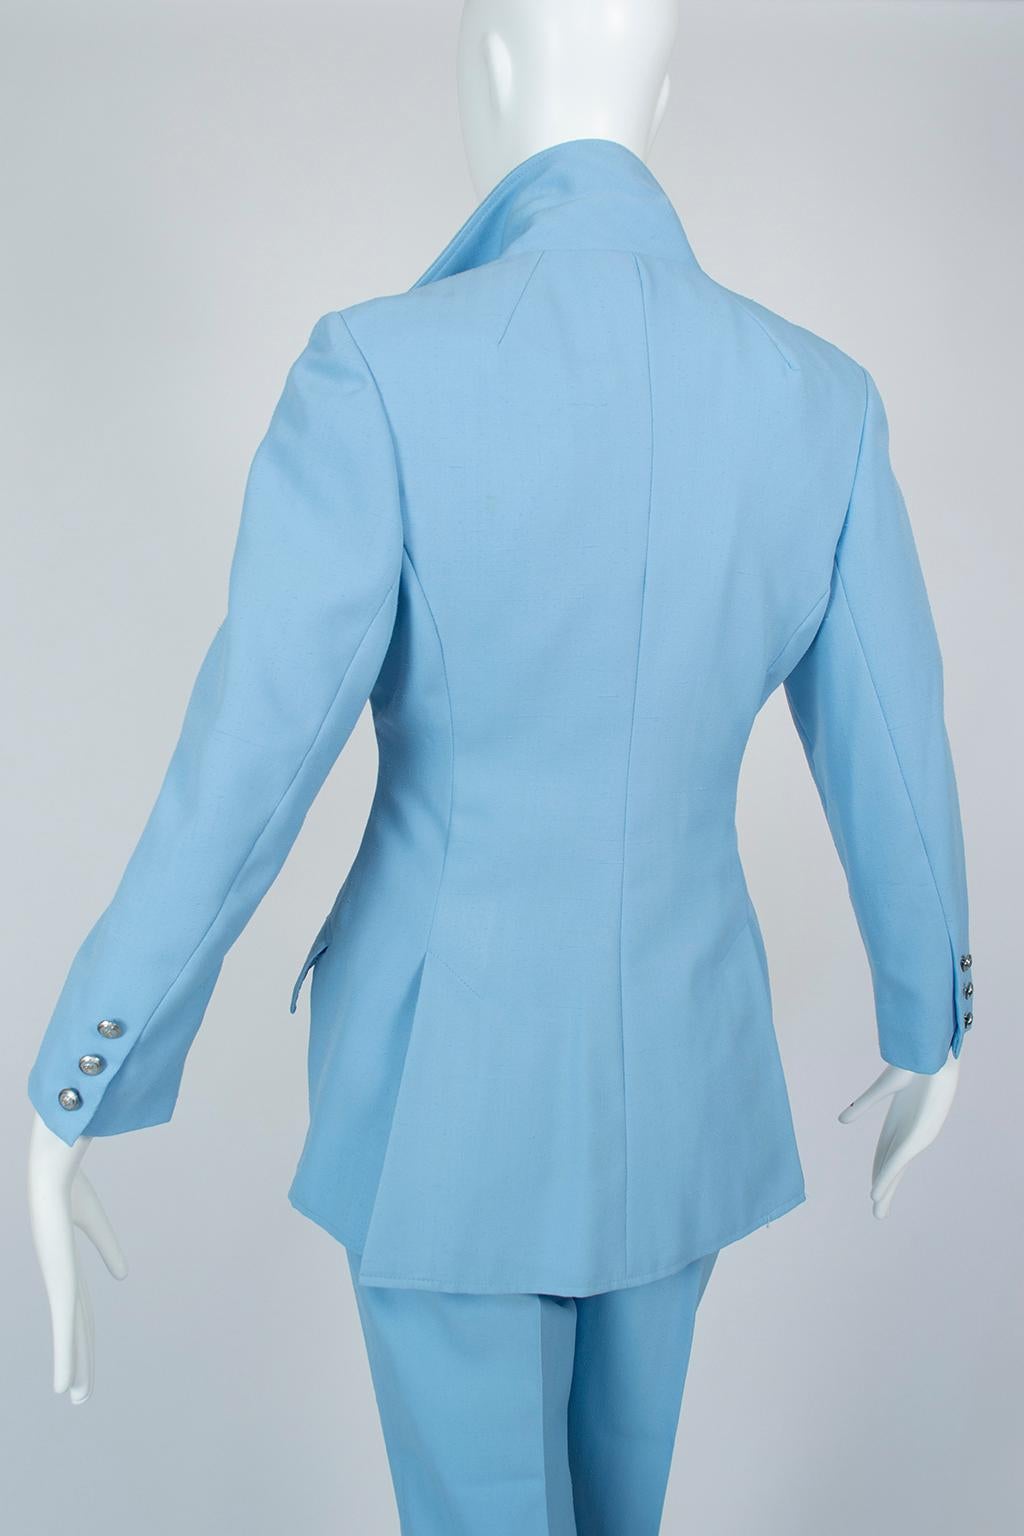 Lilli Ann Paris Powder Blue 3-Piece Western Pant Suit – XS, 1970s For Sale 3